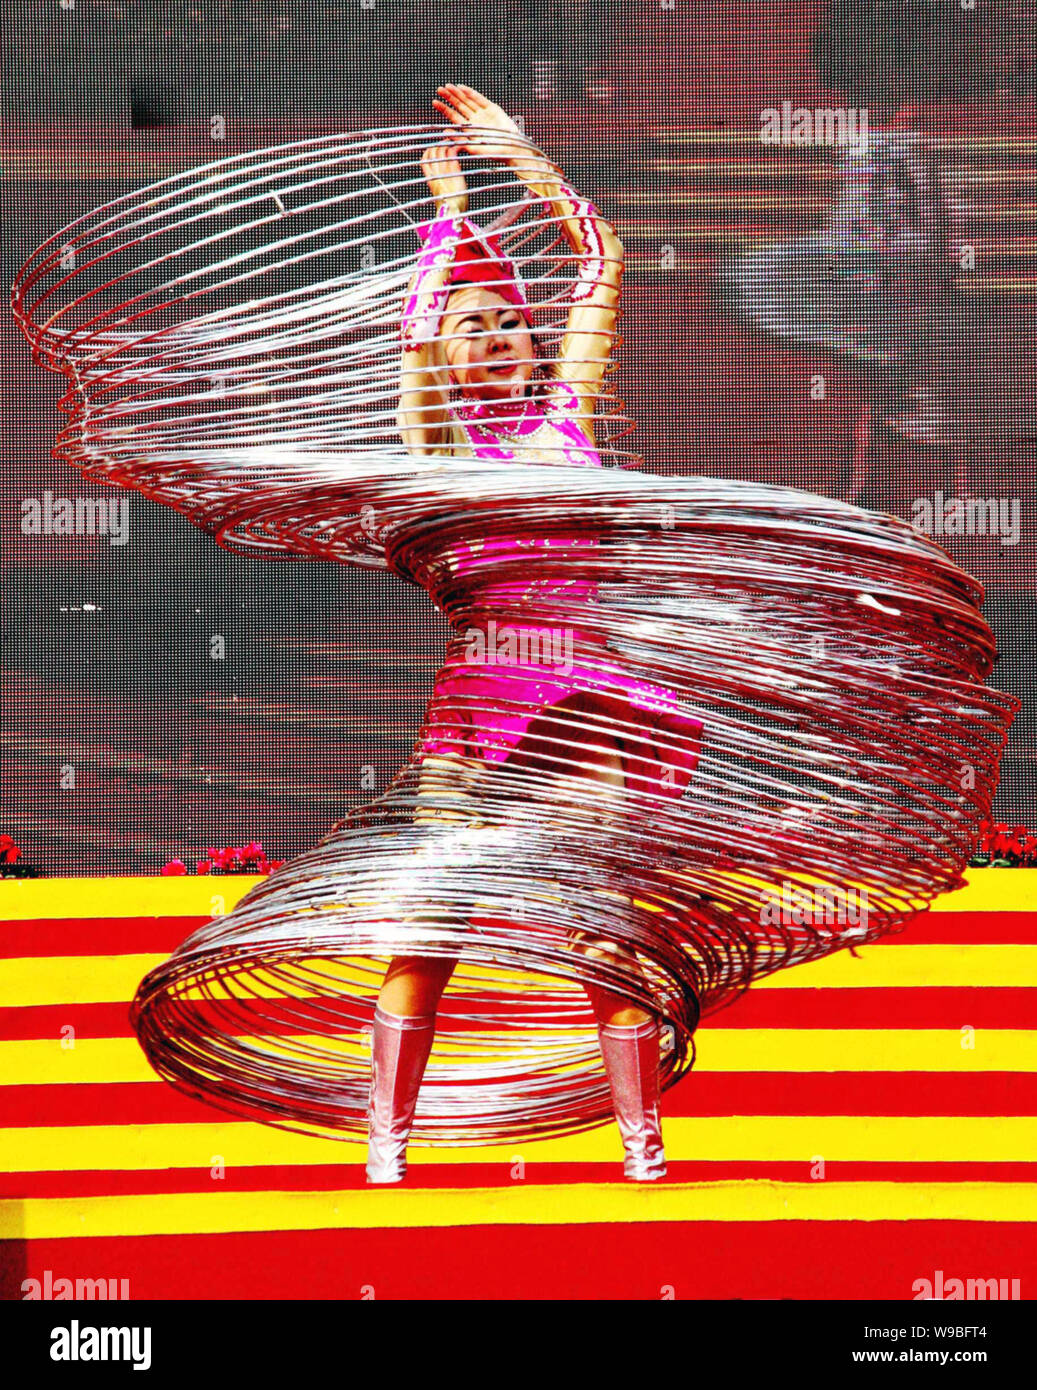 Jin Linlin, Hula Hoop Guinness World Records Keeper, Spins Hula Hoops um  ihren Körper während einer Performance im Dexing City, East China Jiangxi  Provinc Stockfotografie - Alamy